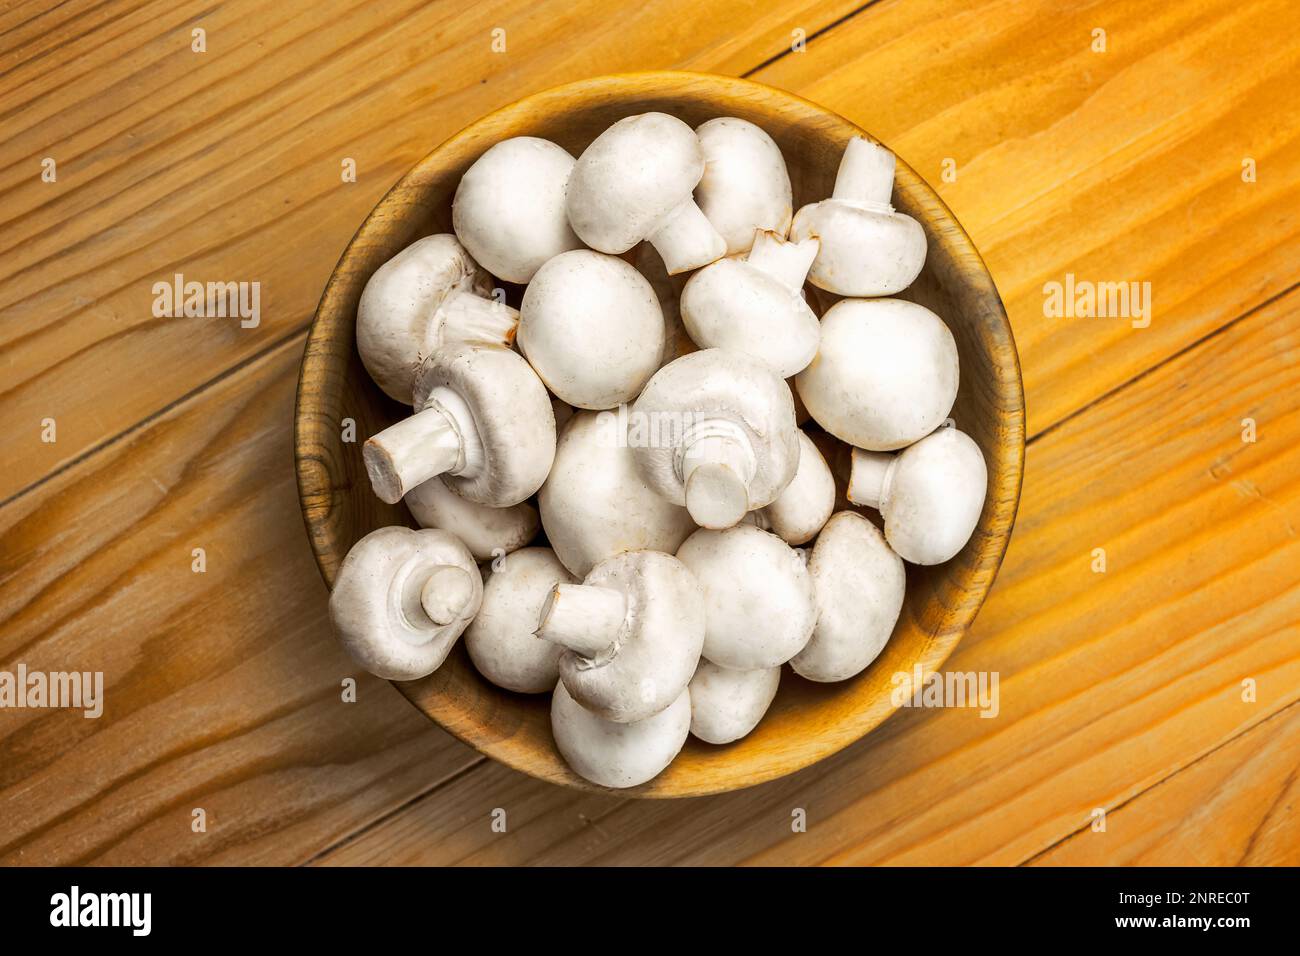 Funghi bianchi freschi champignon in ciotola di legno marrone su sfondo tavolo di legno Foto Stock